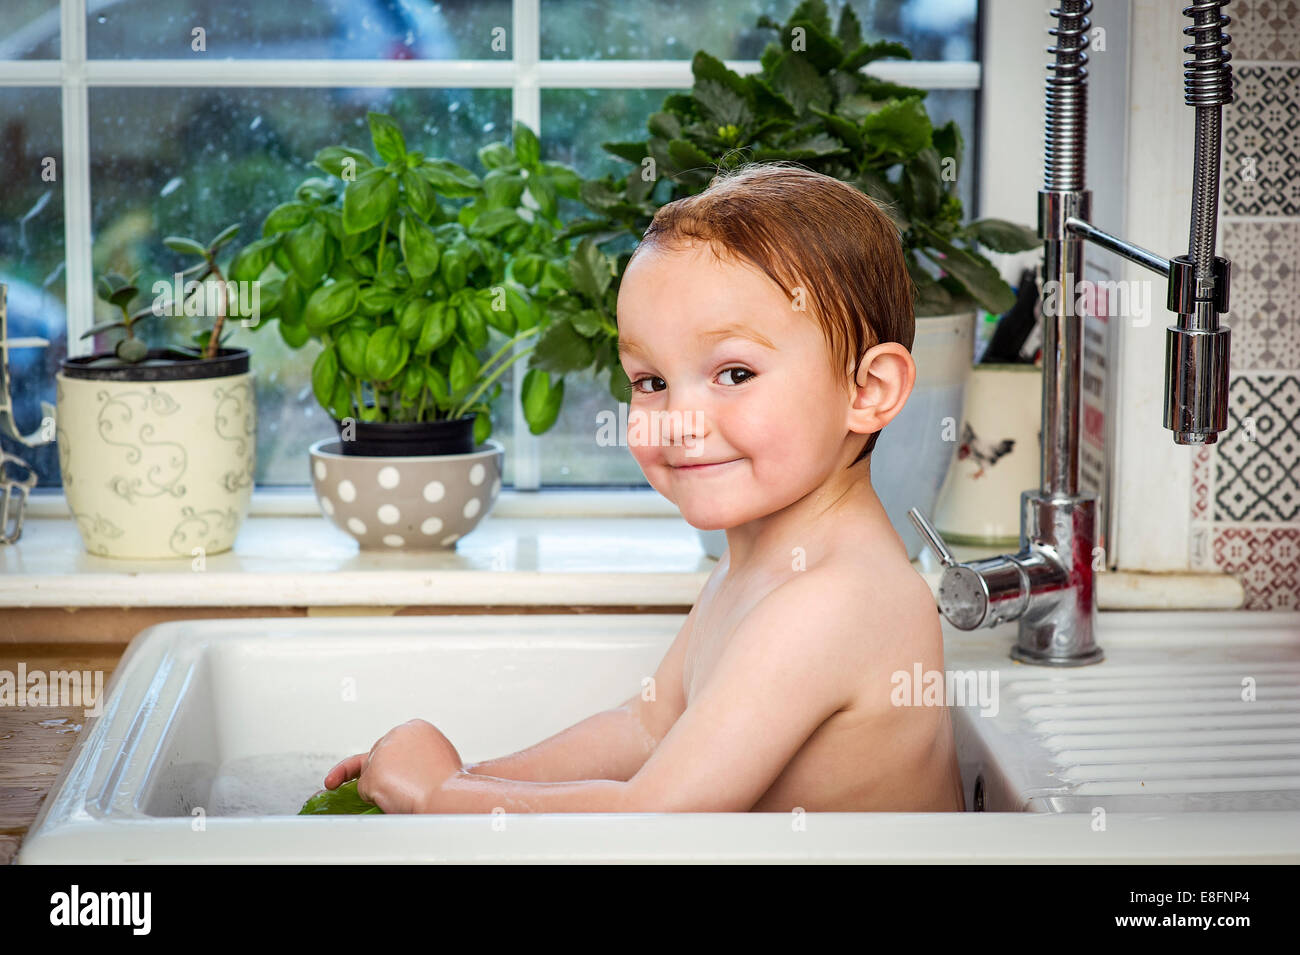 Lächelnder Junge, der im Spülbecken der Küche baden kann Stockfoto